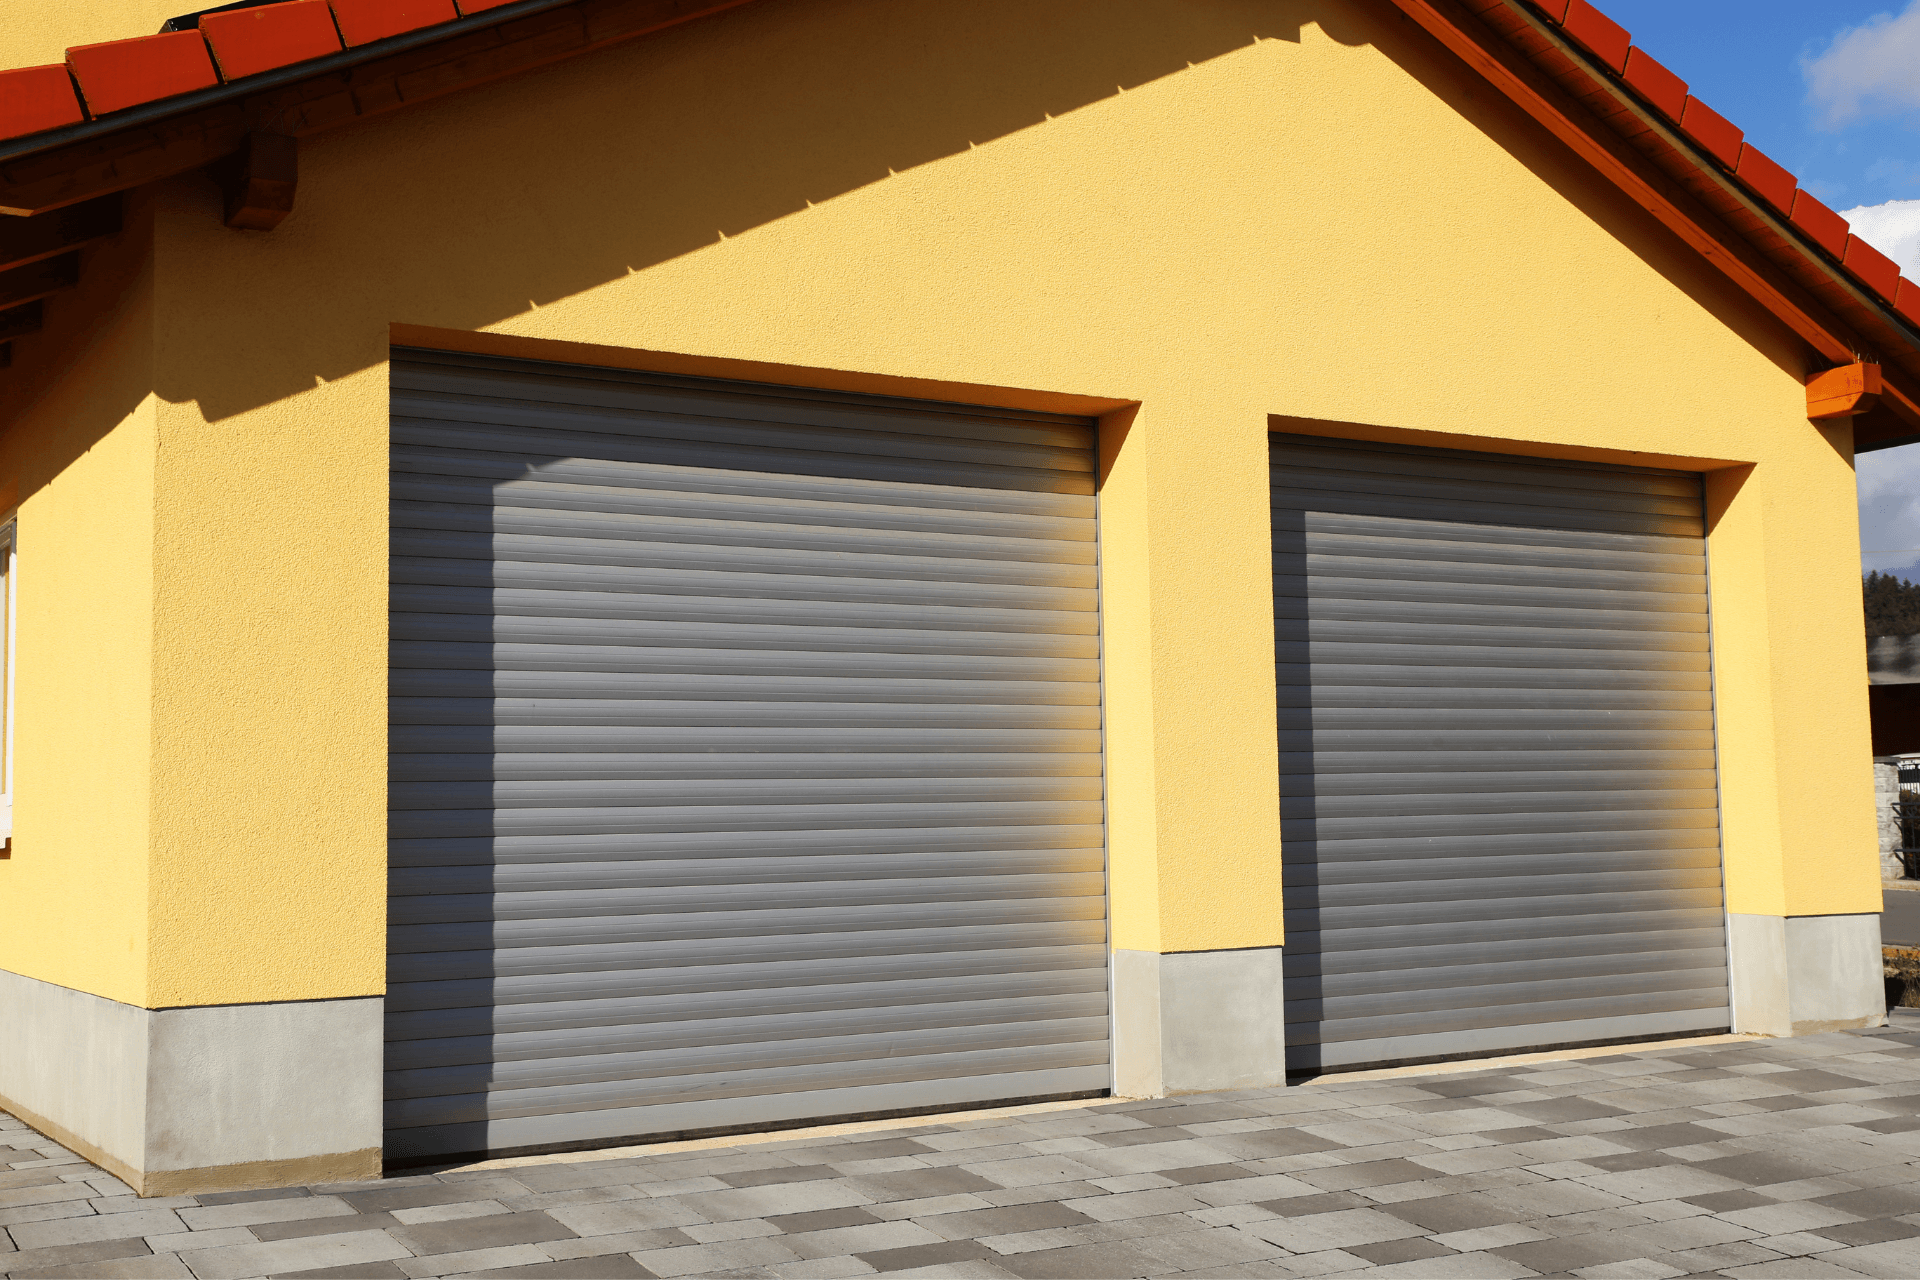 Garage Door Repair Company